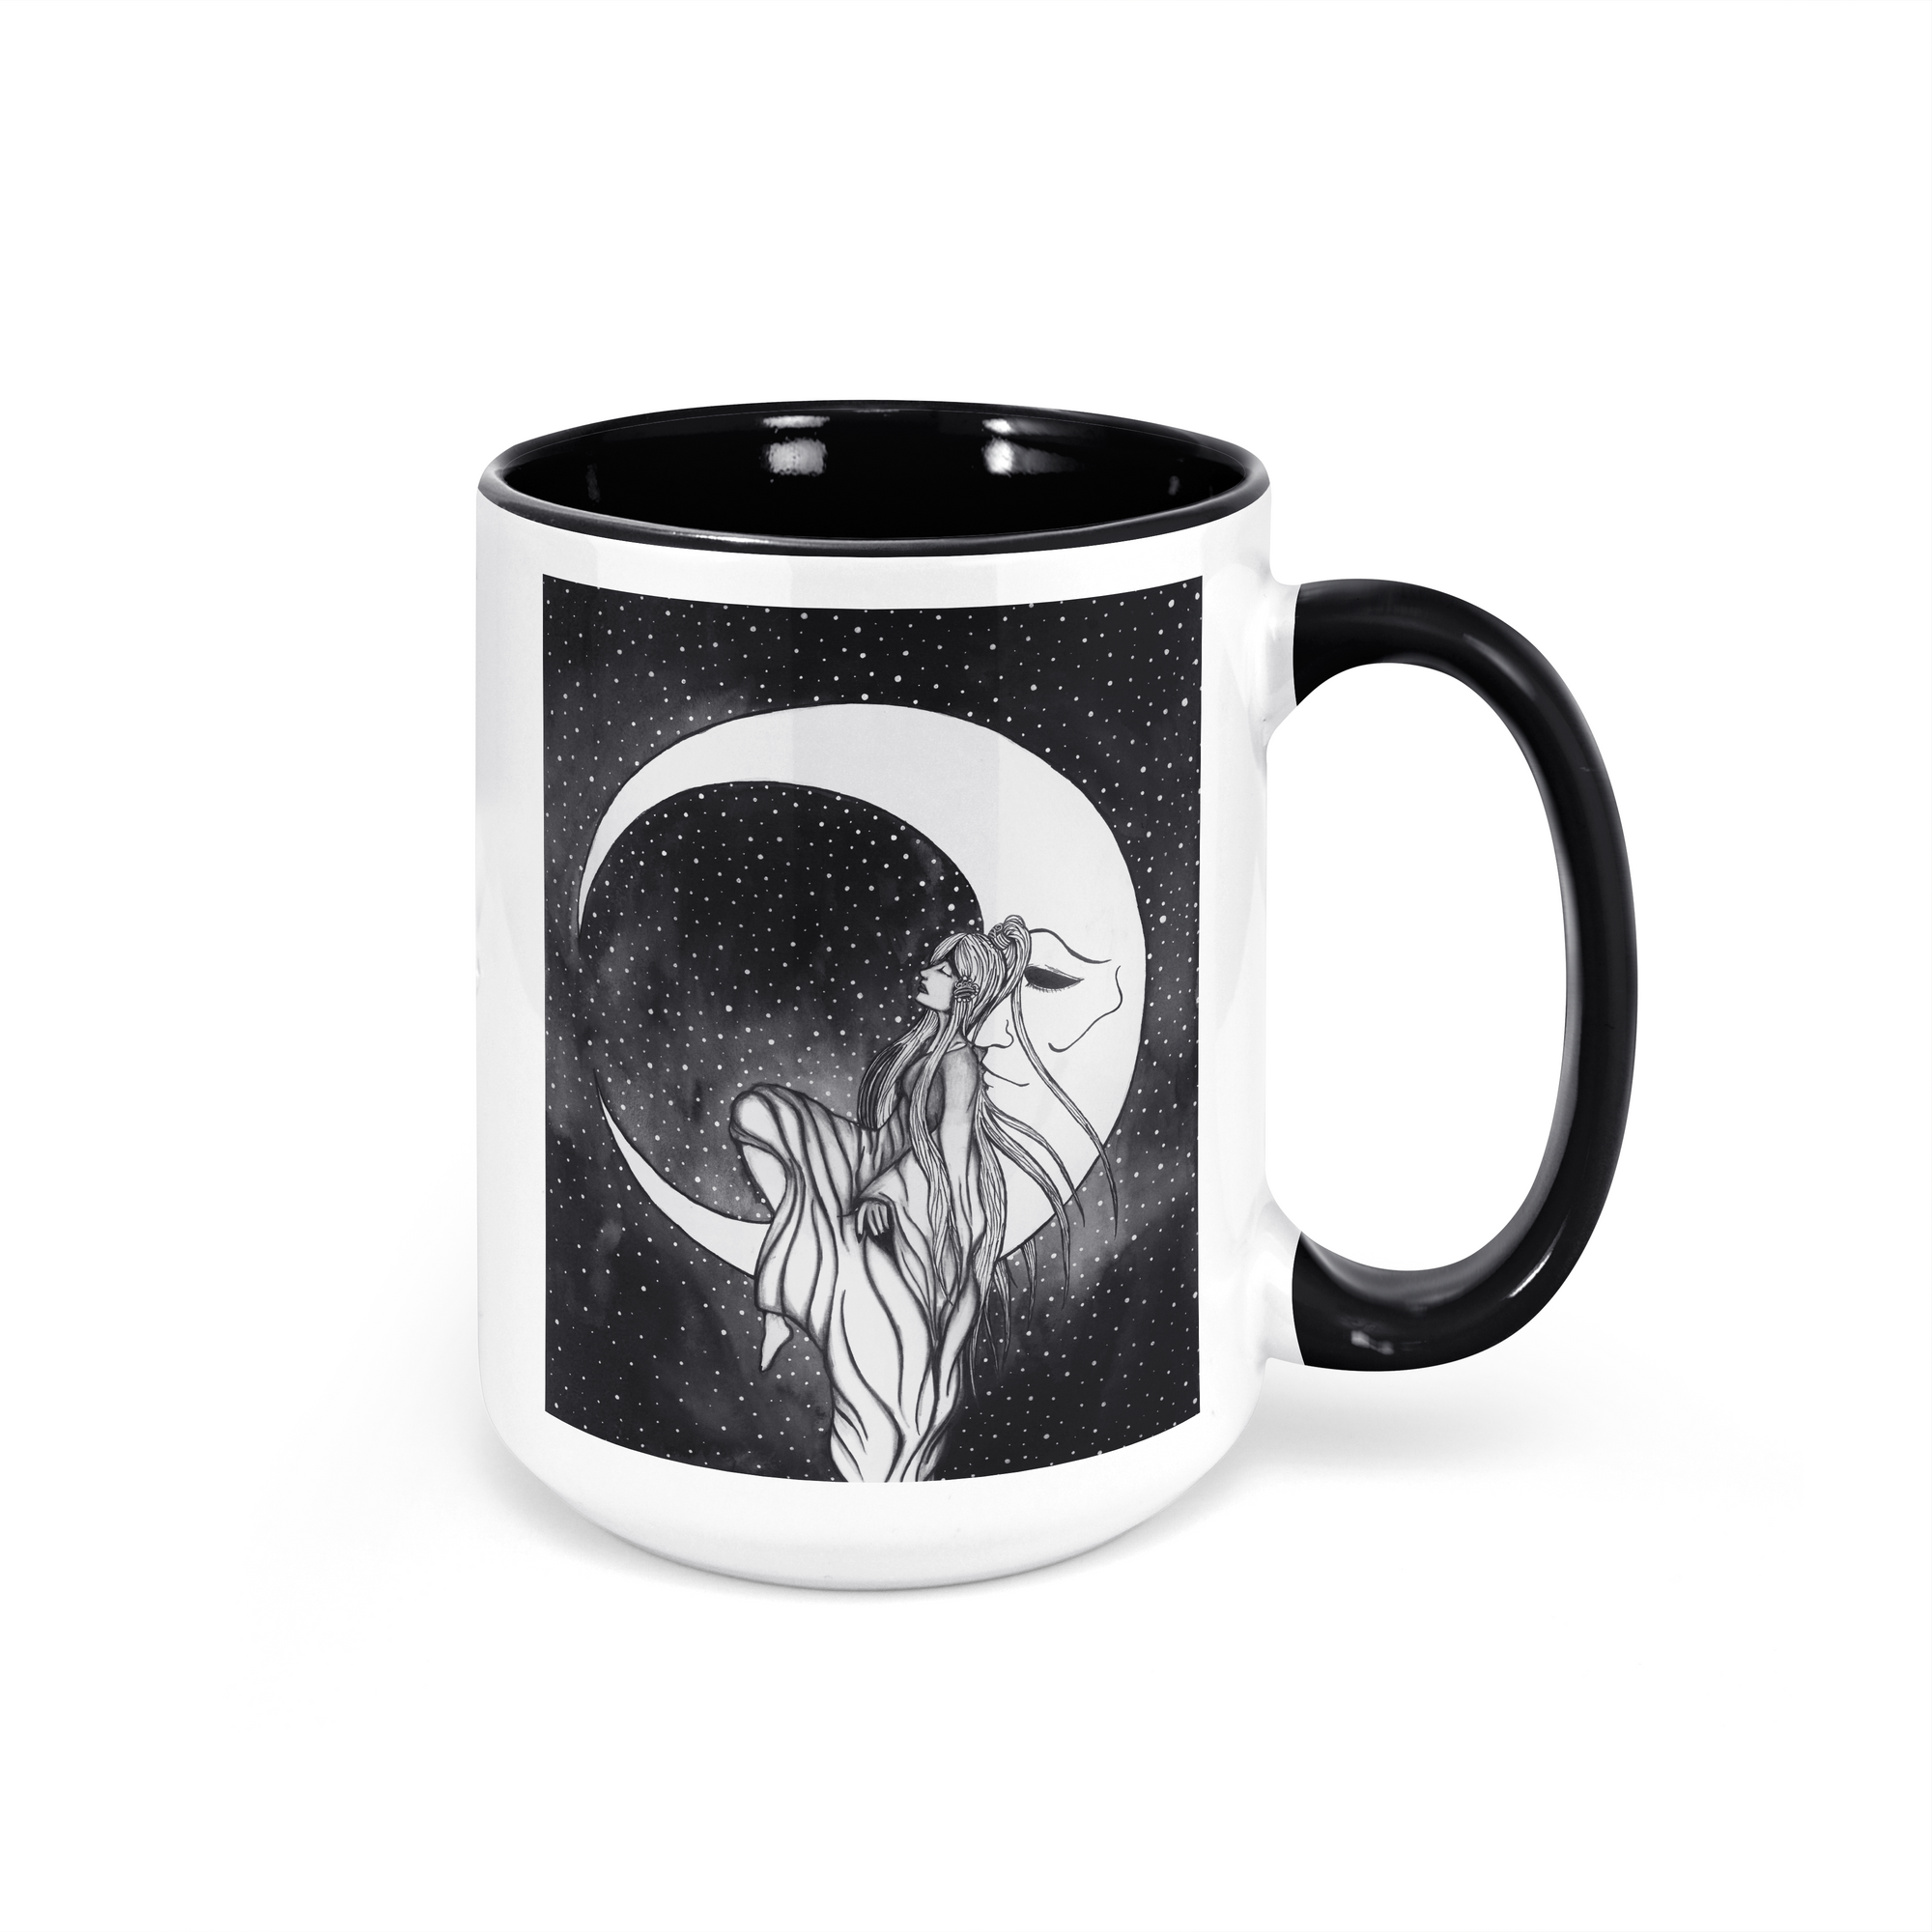 "A Moon and His Princess" - 15oz Coffee Mug